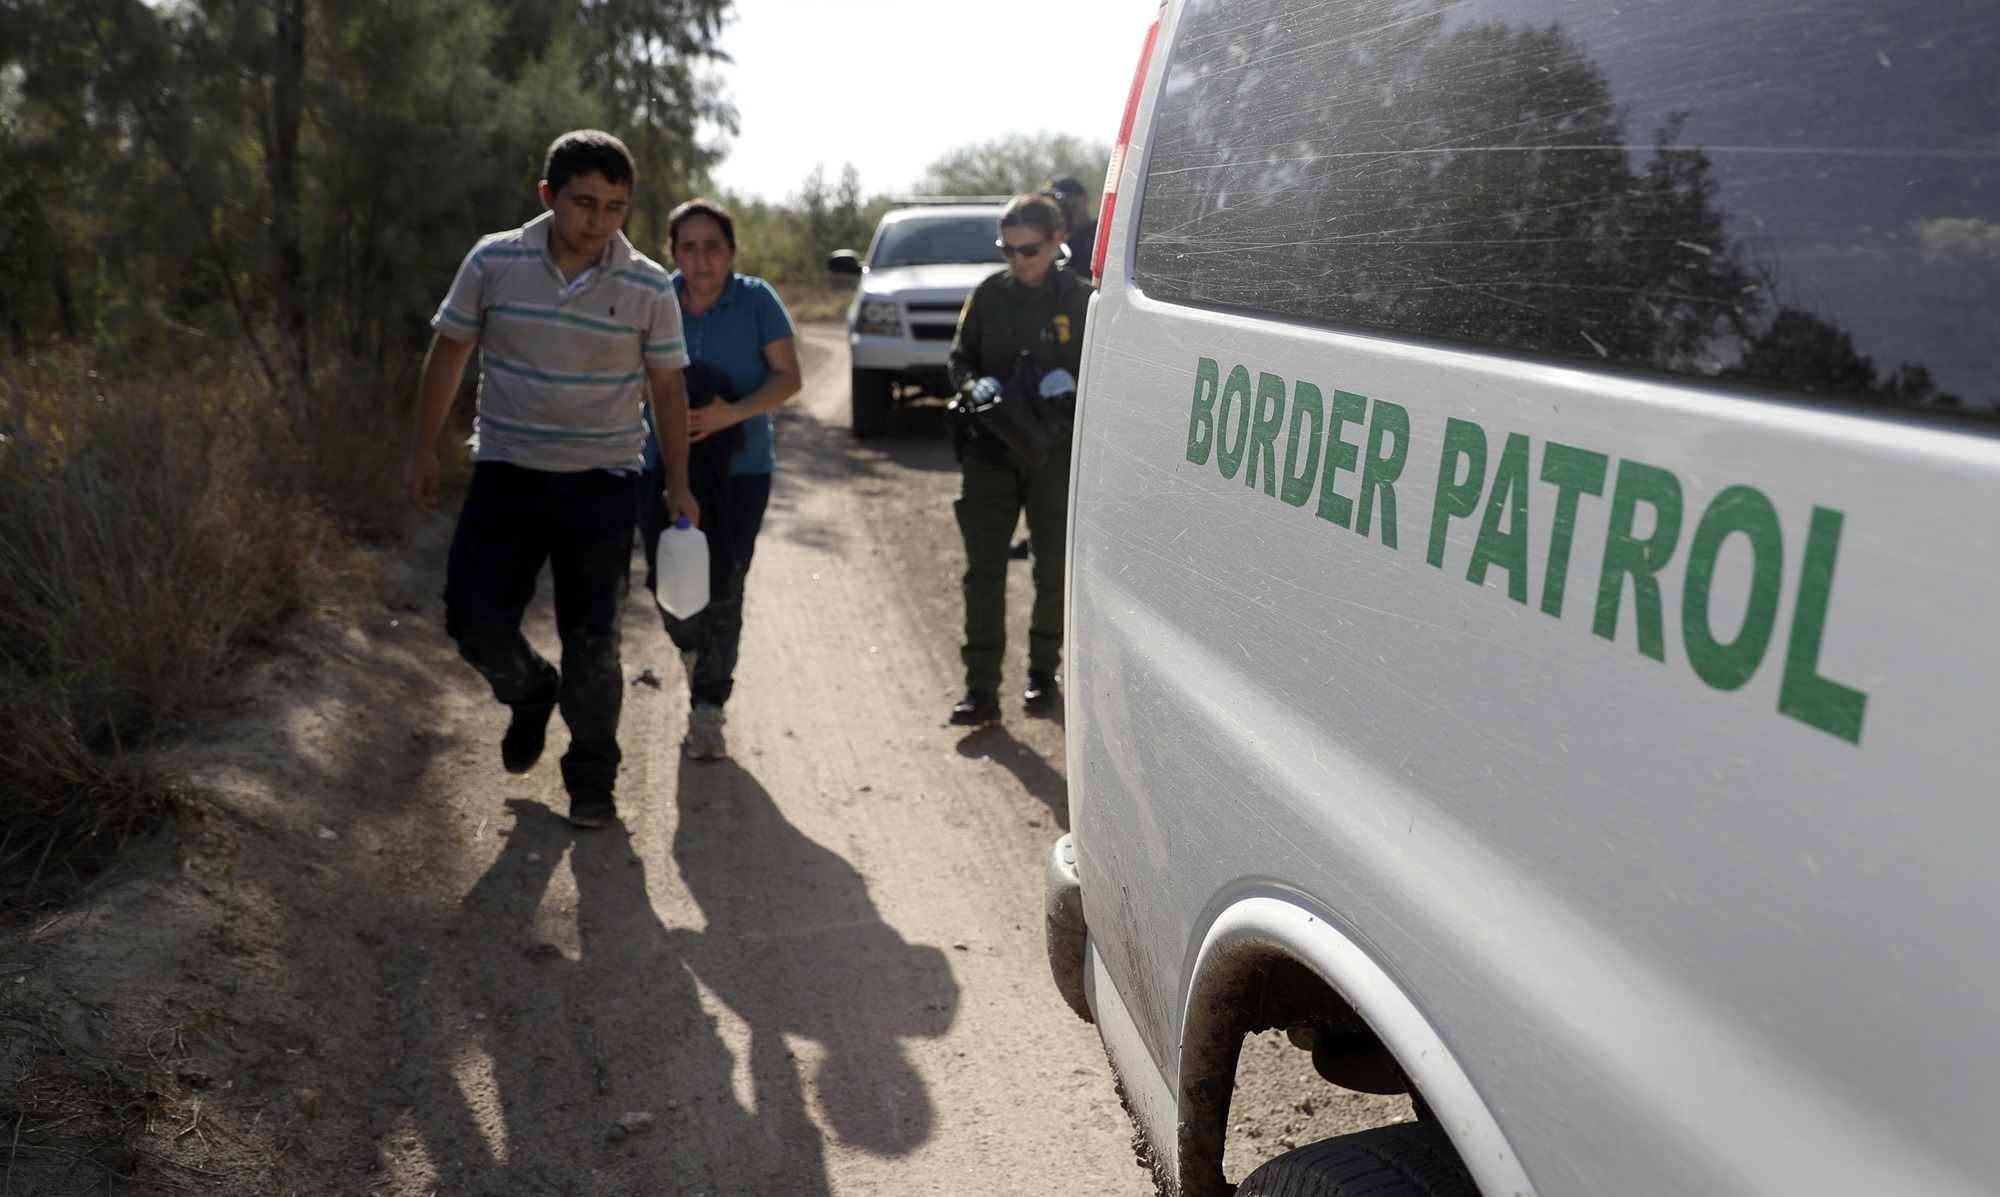 Las cuatro horas que serán esenciales para inmigrantes que crucen la frontera, según orden de Biden – La Opinión